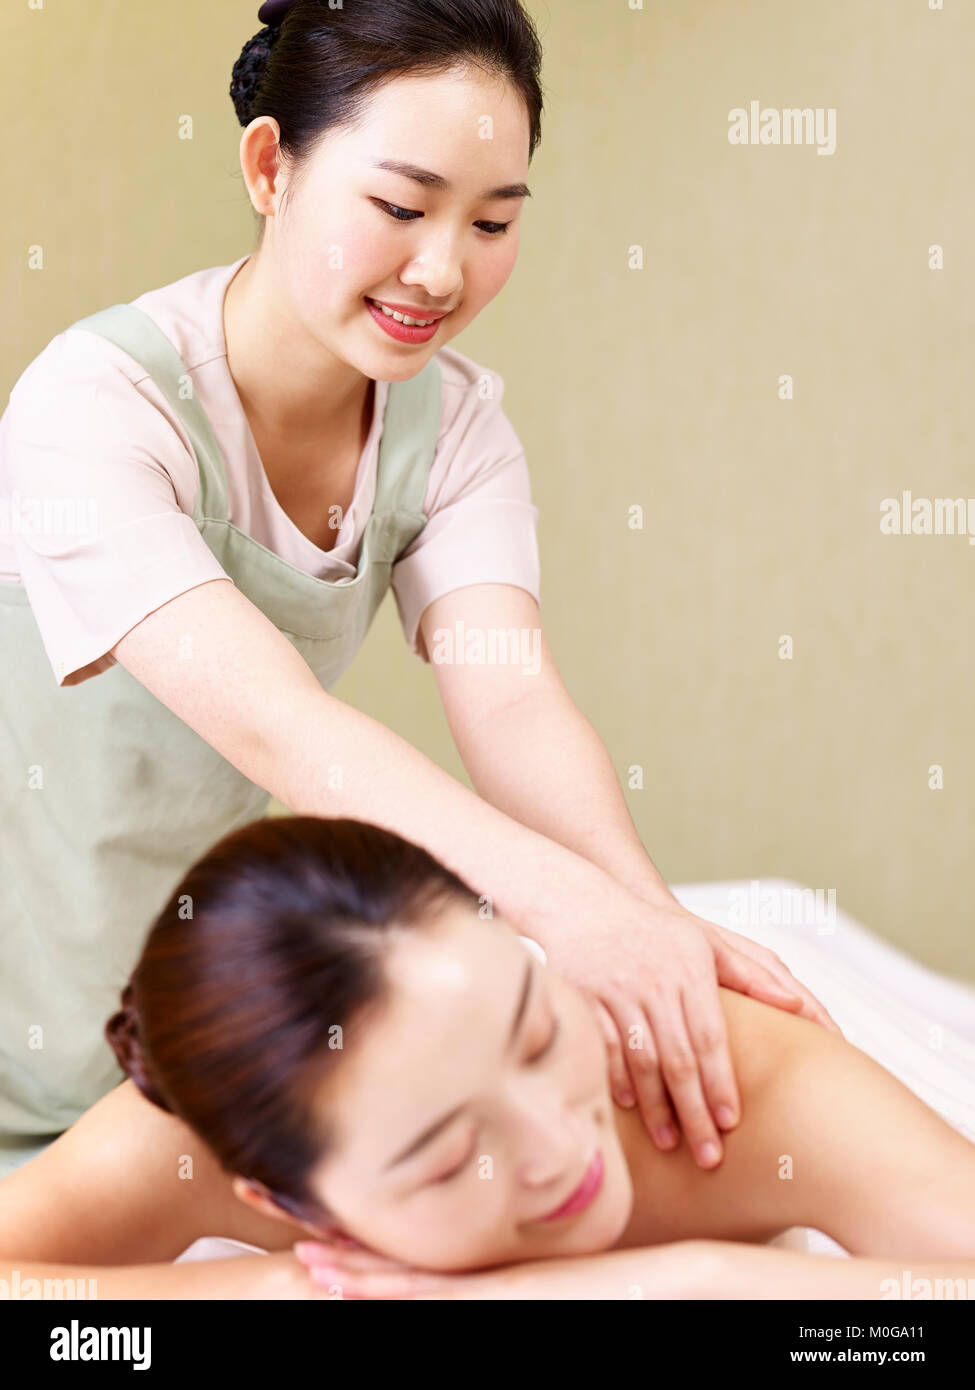 Insieme a «teen asiatico massaggio» le persone stanno cercando del porno: